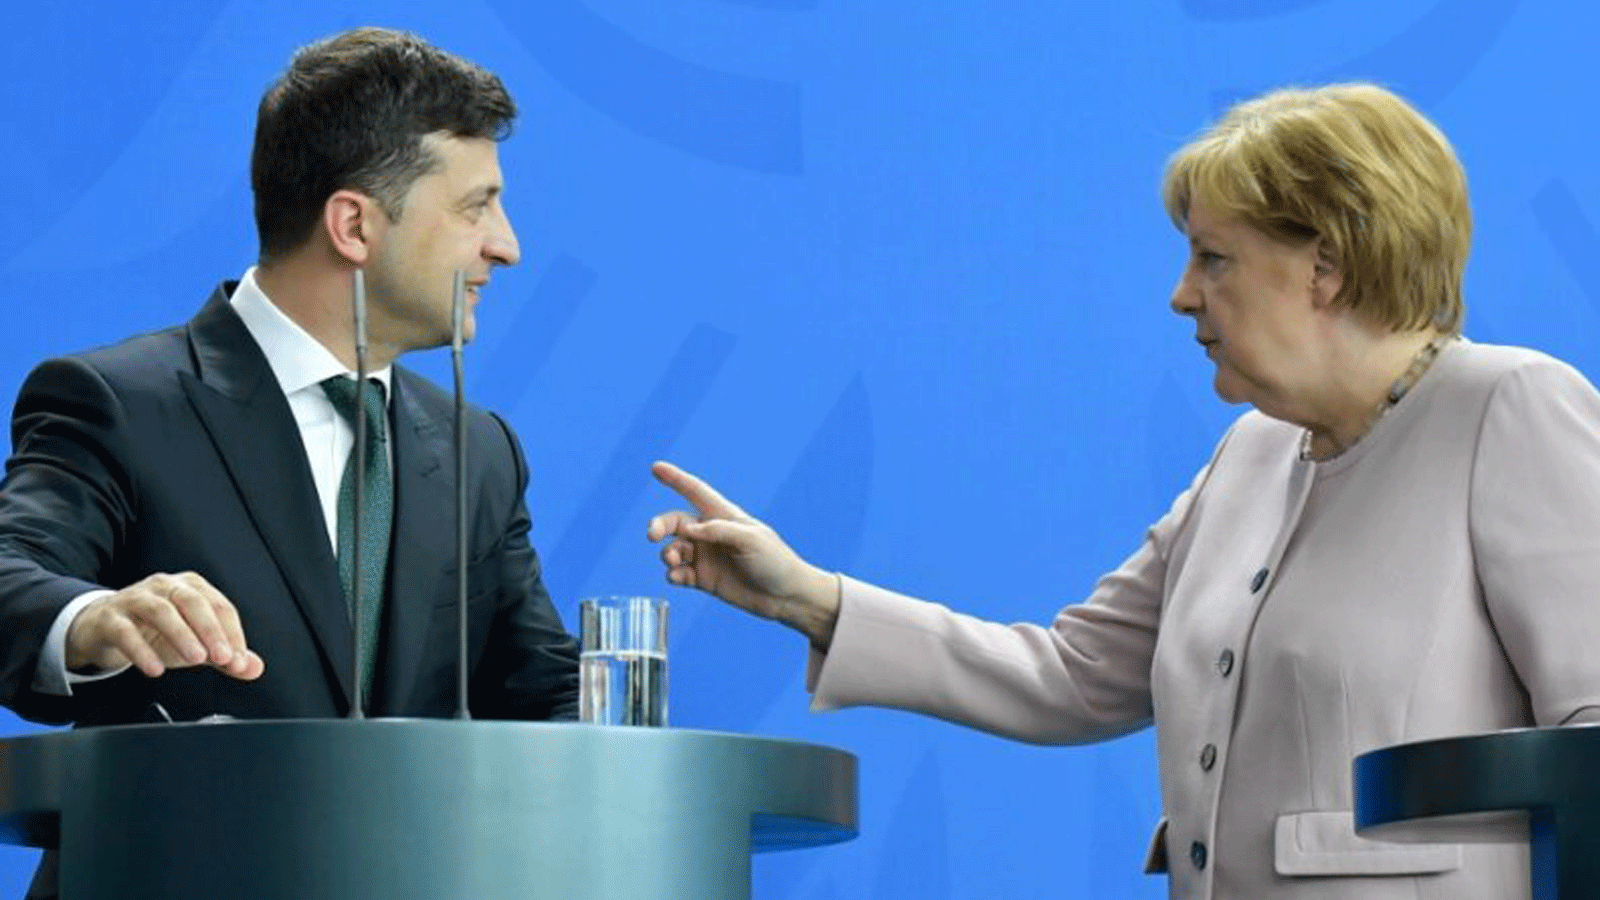 المستشارة الألمانية أنجيلا ميركل والرئيس الأوكراني فولوديمير زيلينسكي يتحدثان في مؤتمرٍ صحفي حول زيارته الرسمية الأولى لألمانيا في 18 حزيران/يونيو 2019، في مقر المستشارية في برلين.